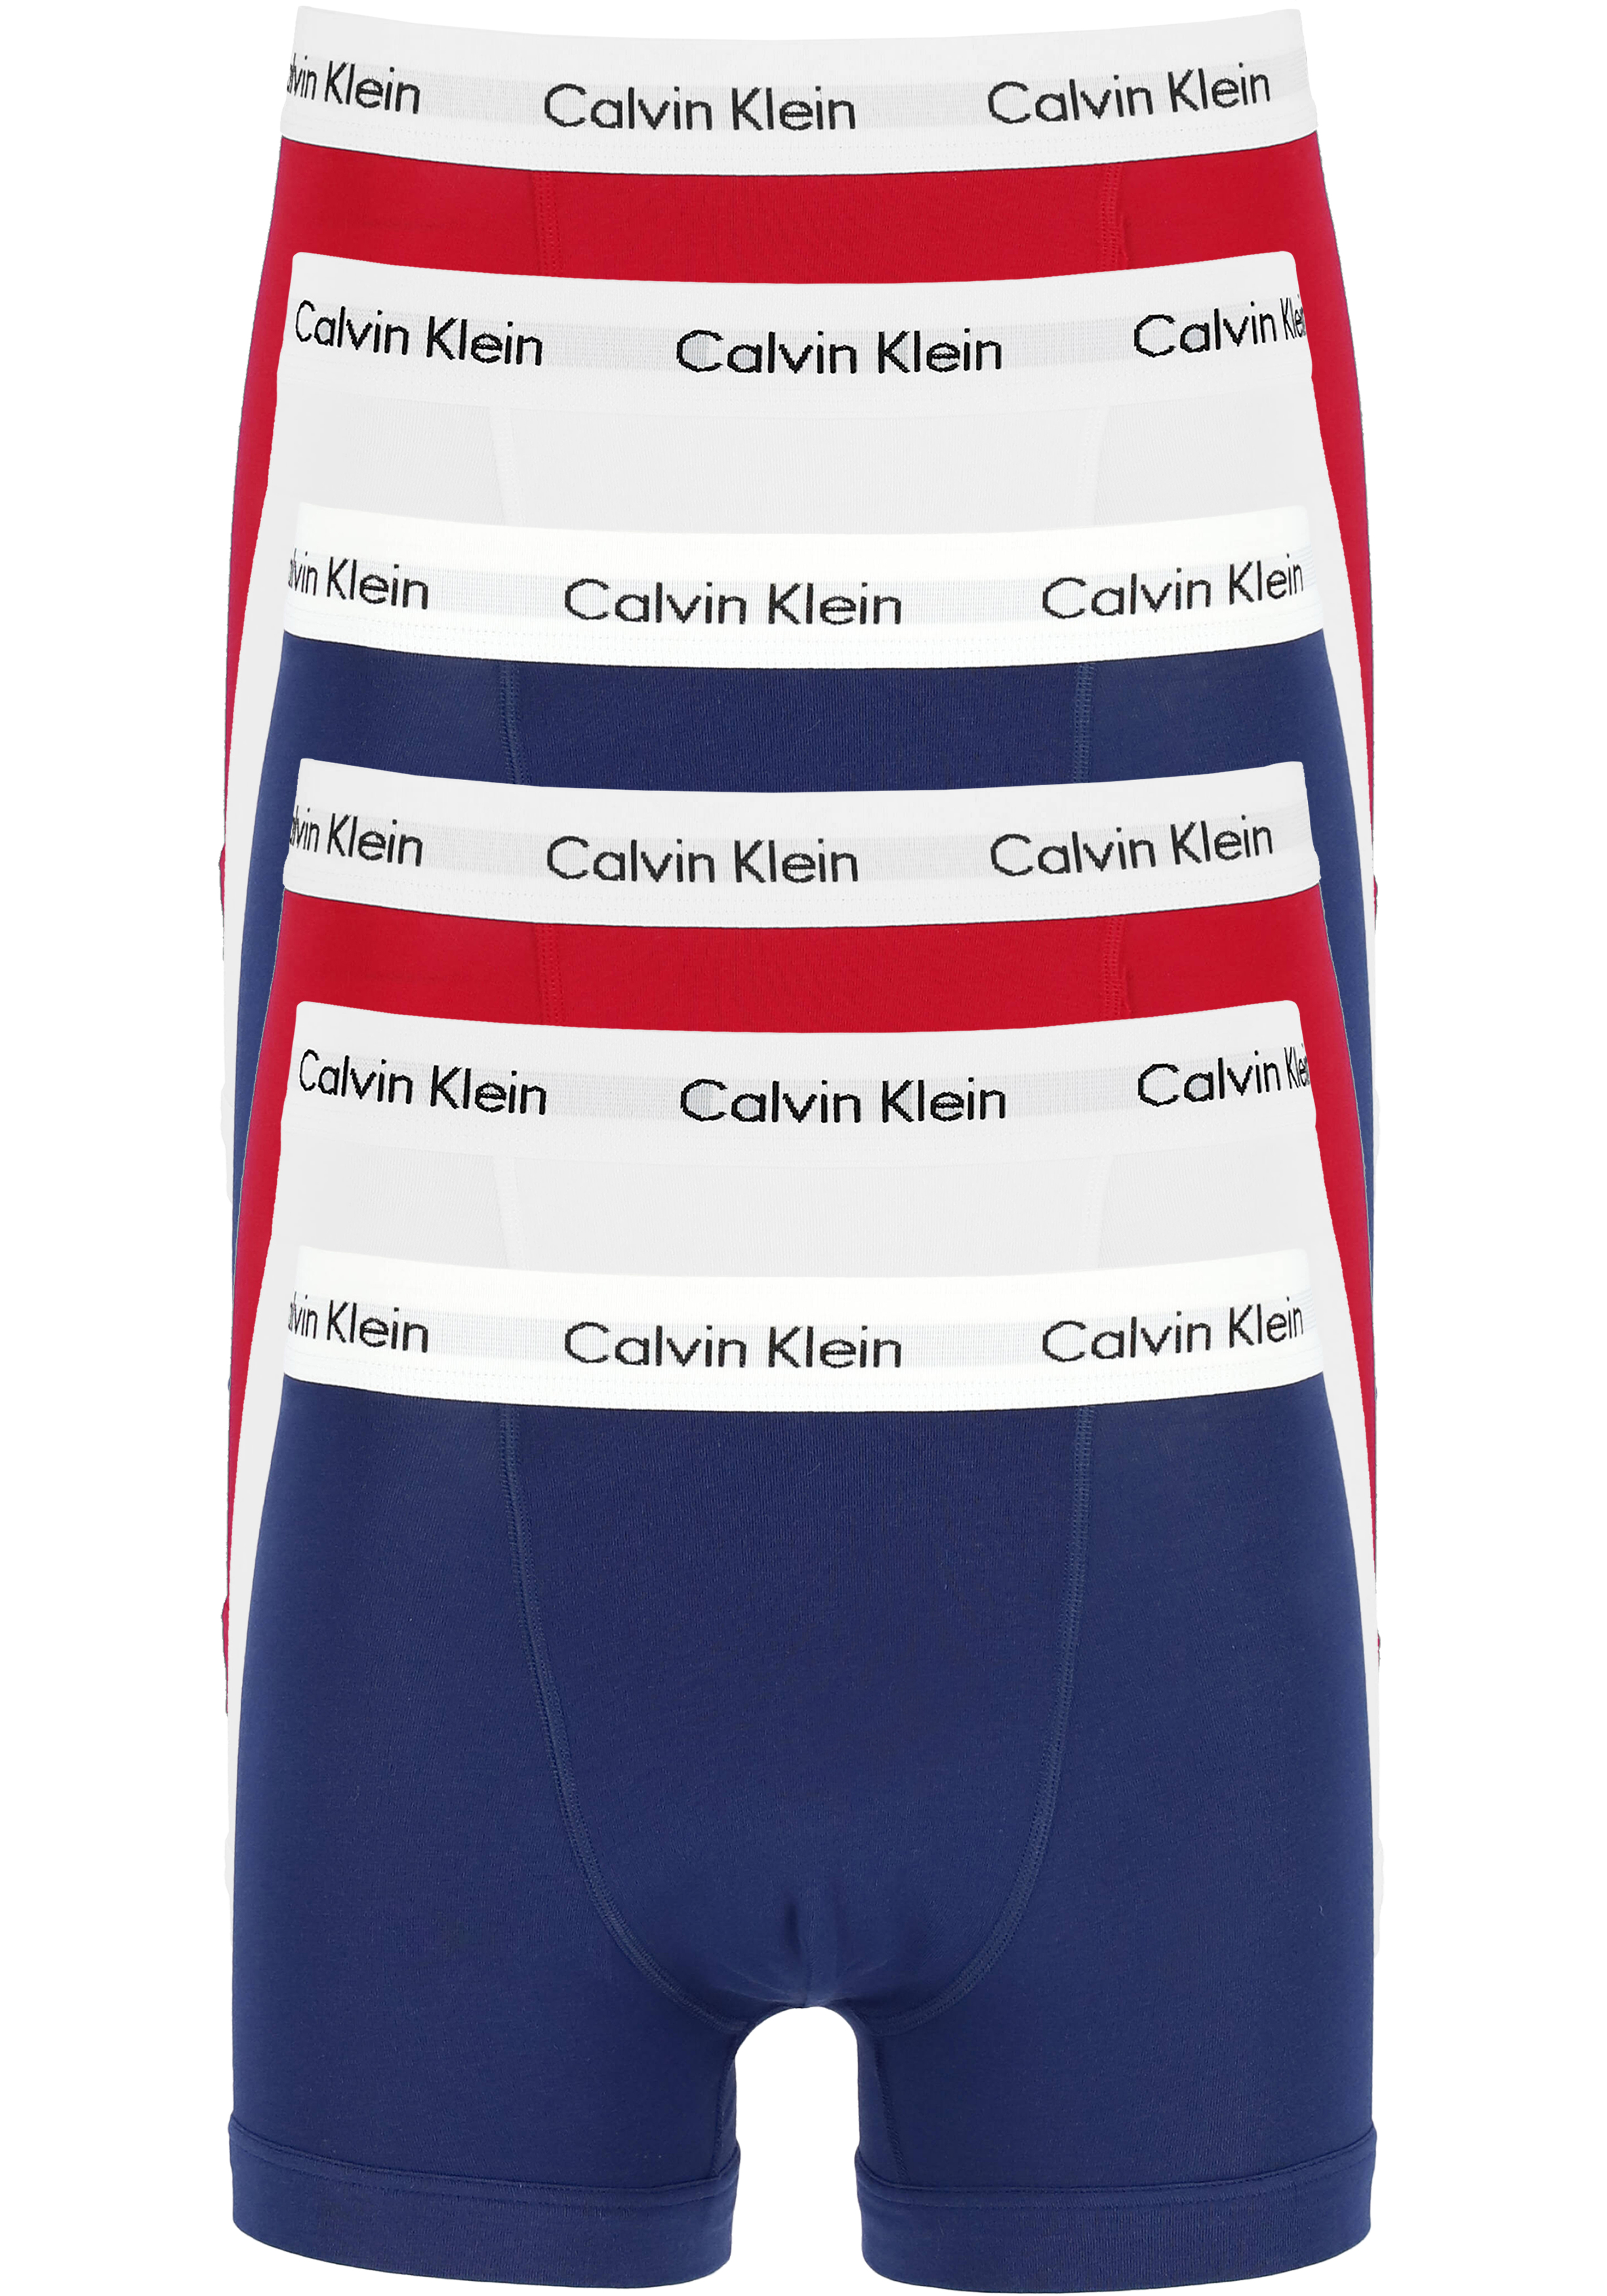 snelweg bloemblad Kort leven Actie 6-pack: Calvin Klein trunks, heren boxers normale lengte, rood,... -  Shop de nieuwste voorjaarsmode